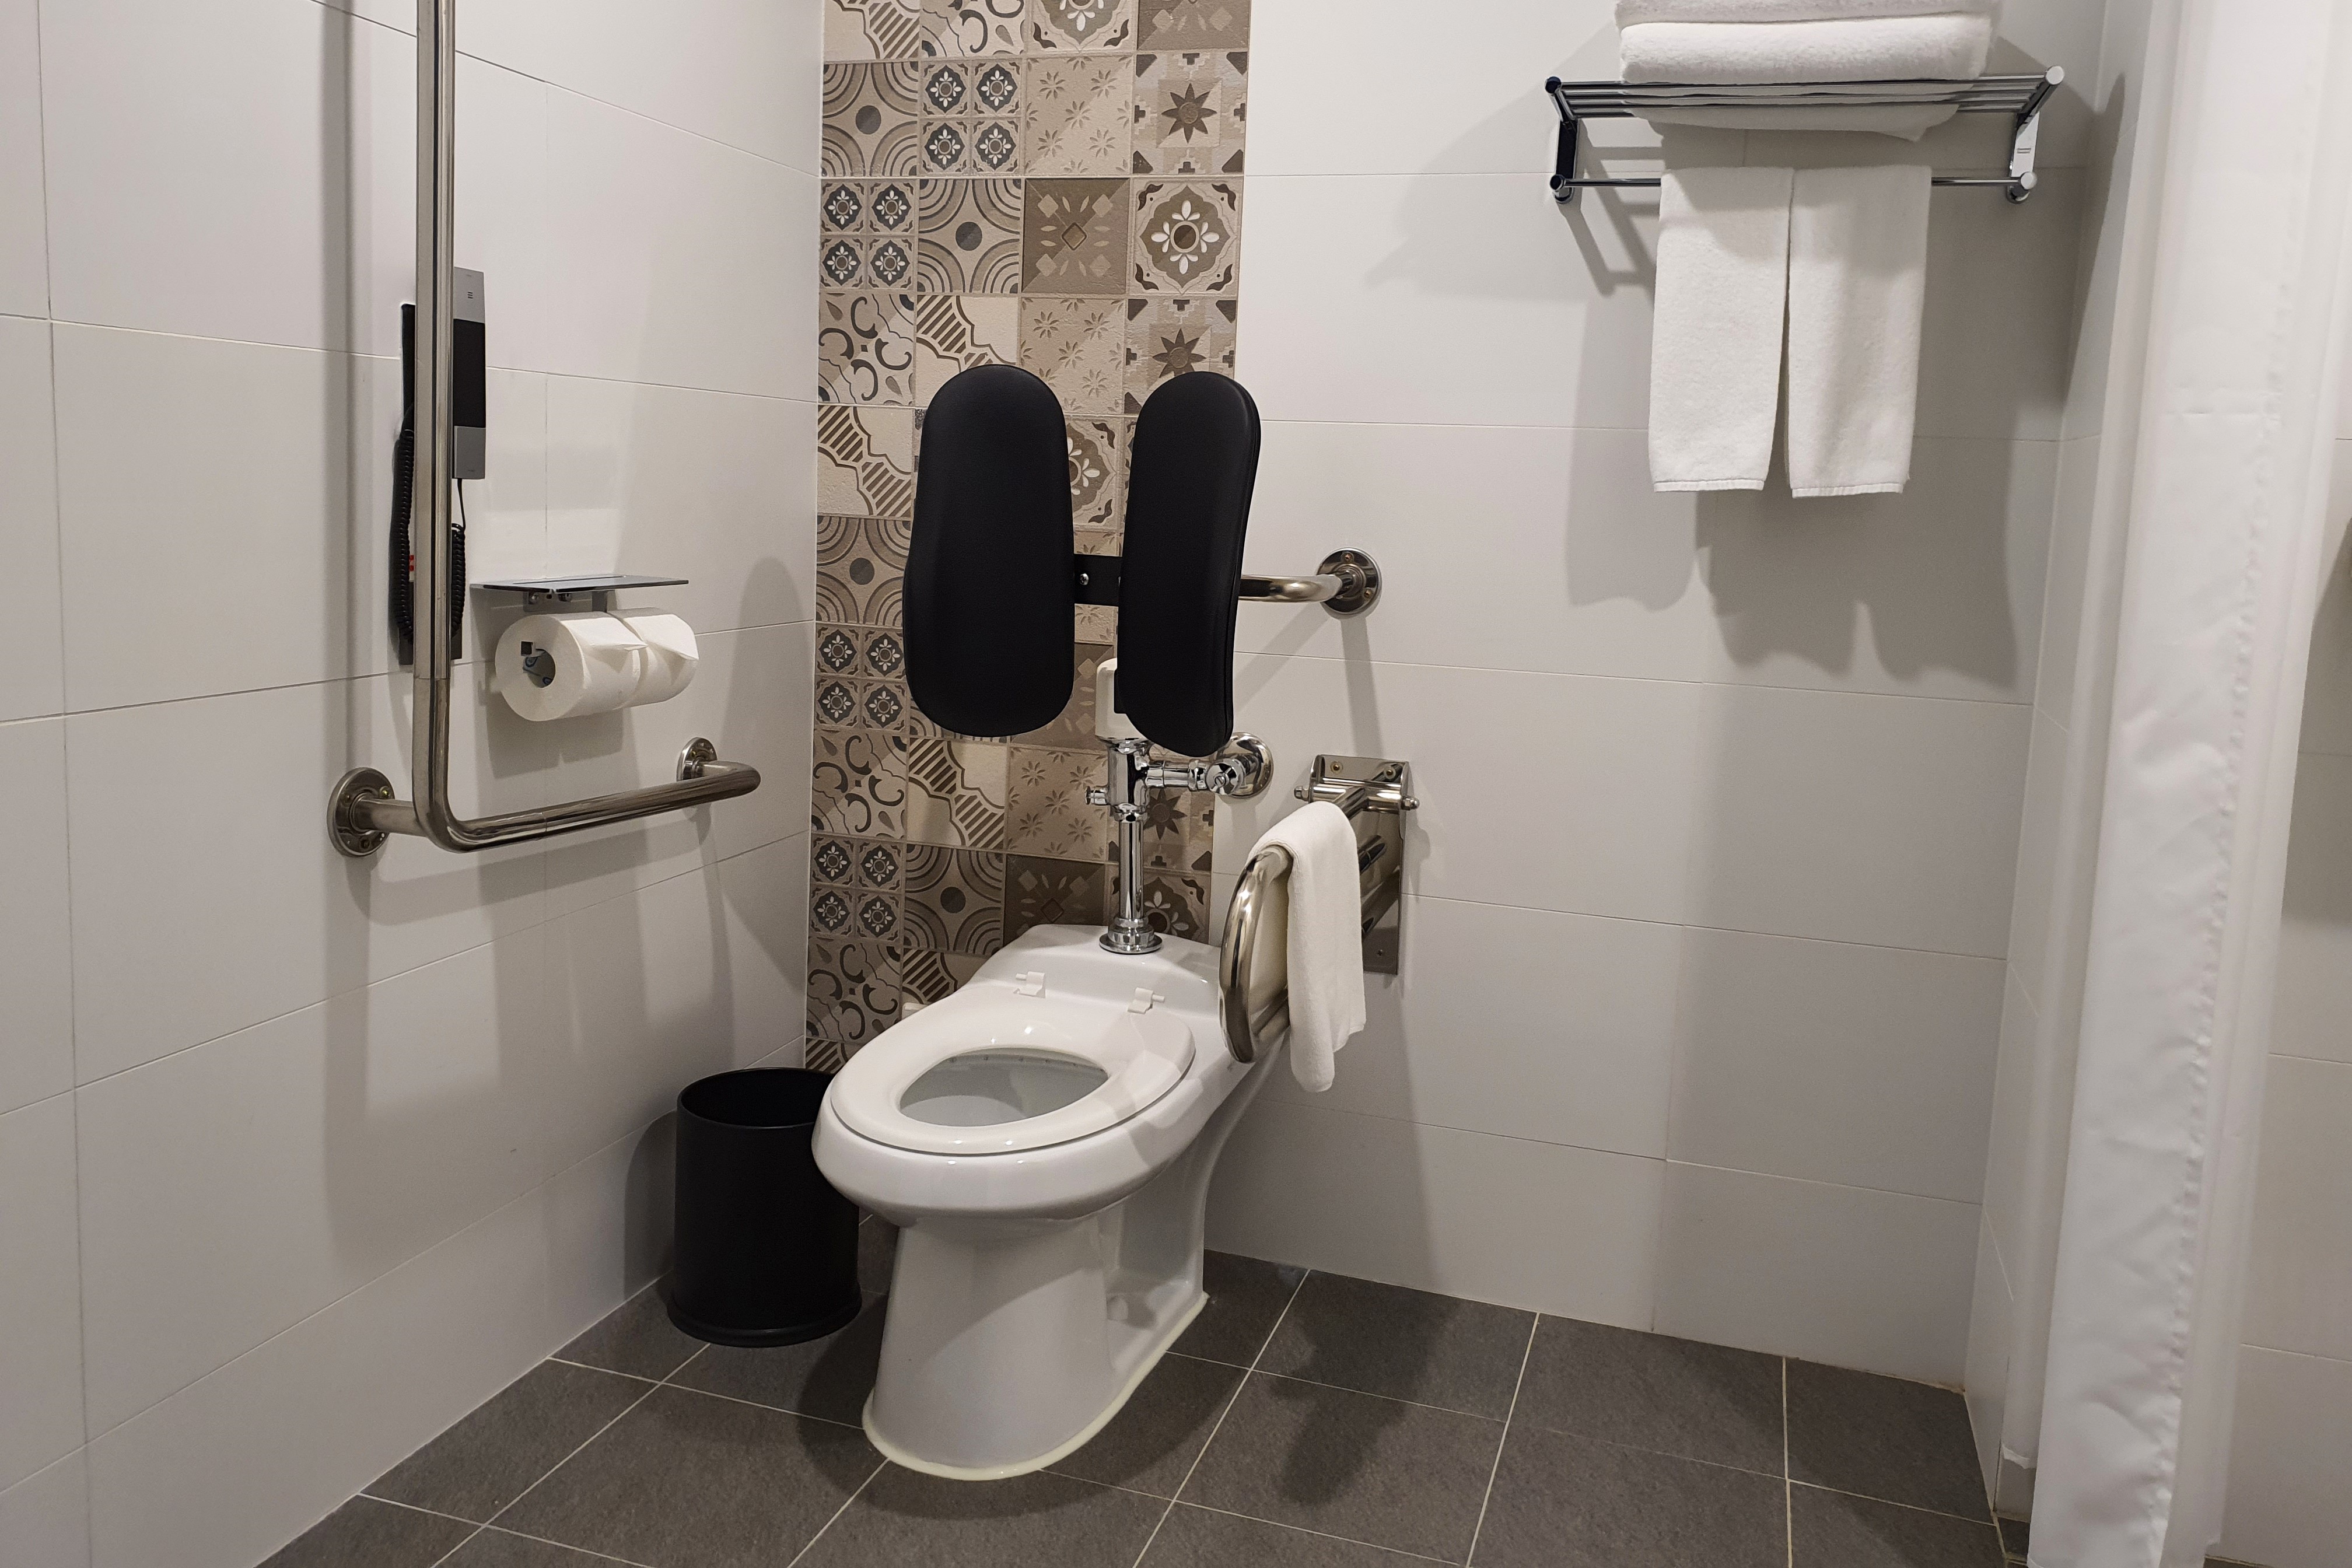 장애인 객실 화장실0 : 안전바와 등받이가 설치된 나인트리 프리미어 호텔 인사동 객실 화장실